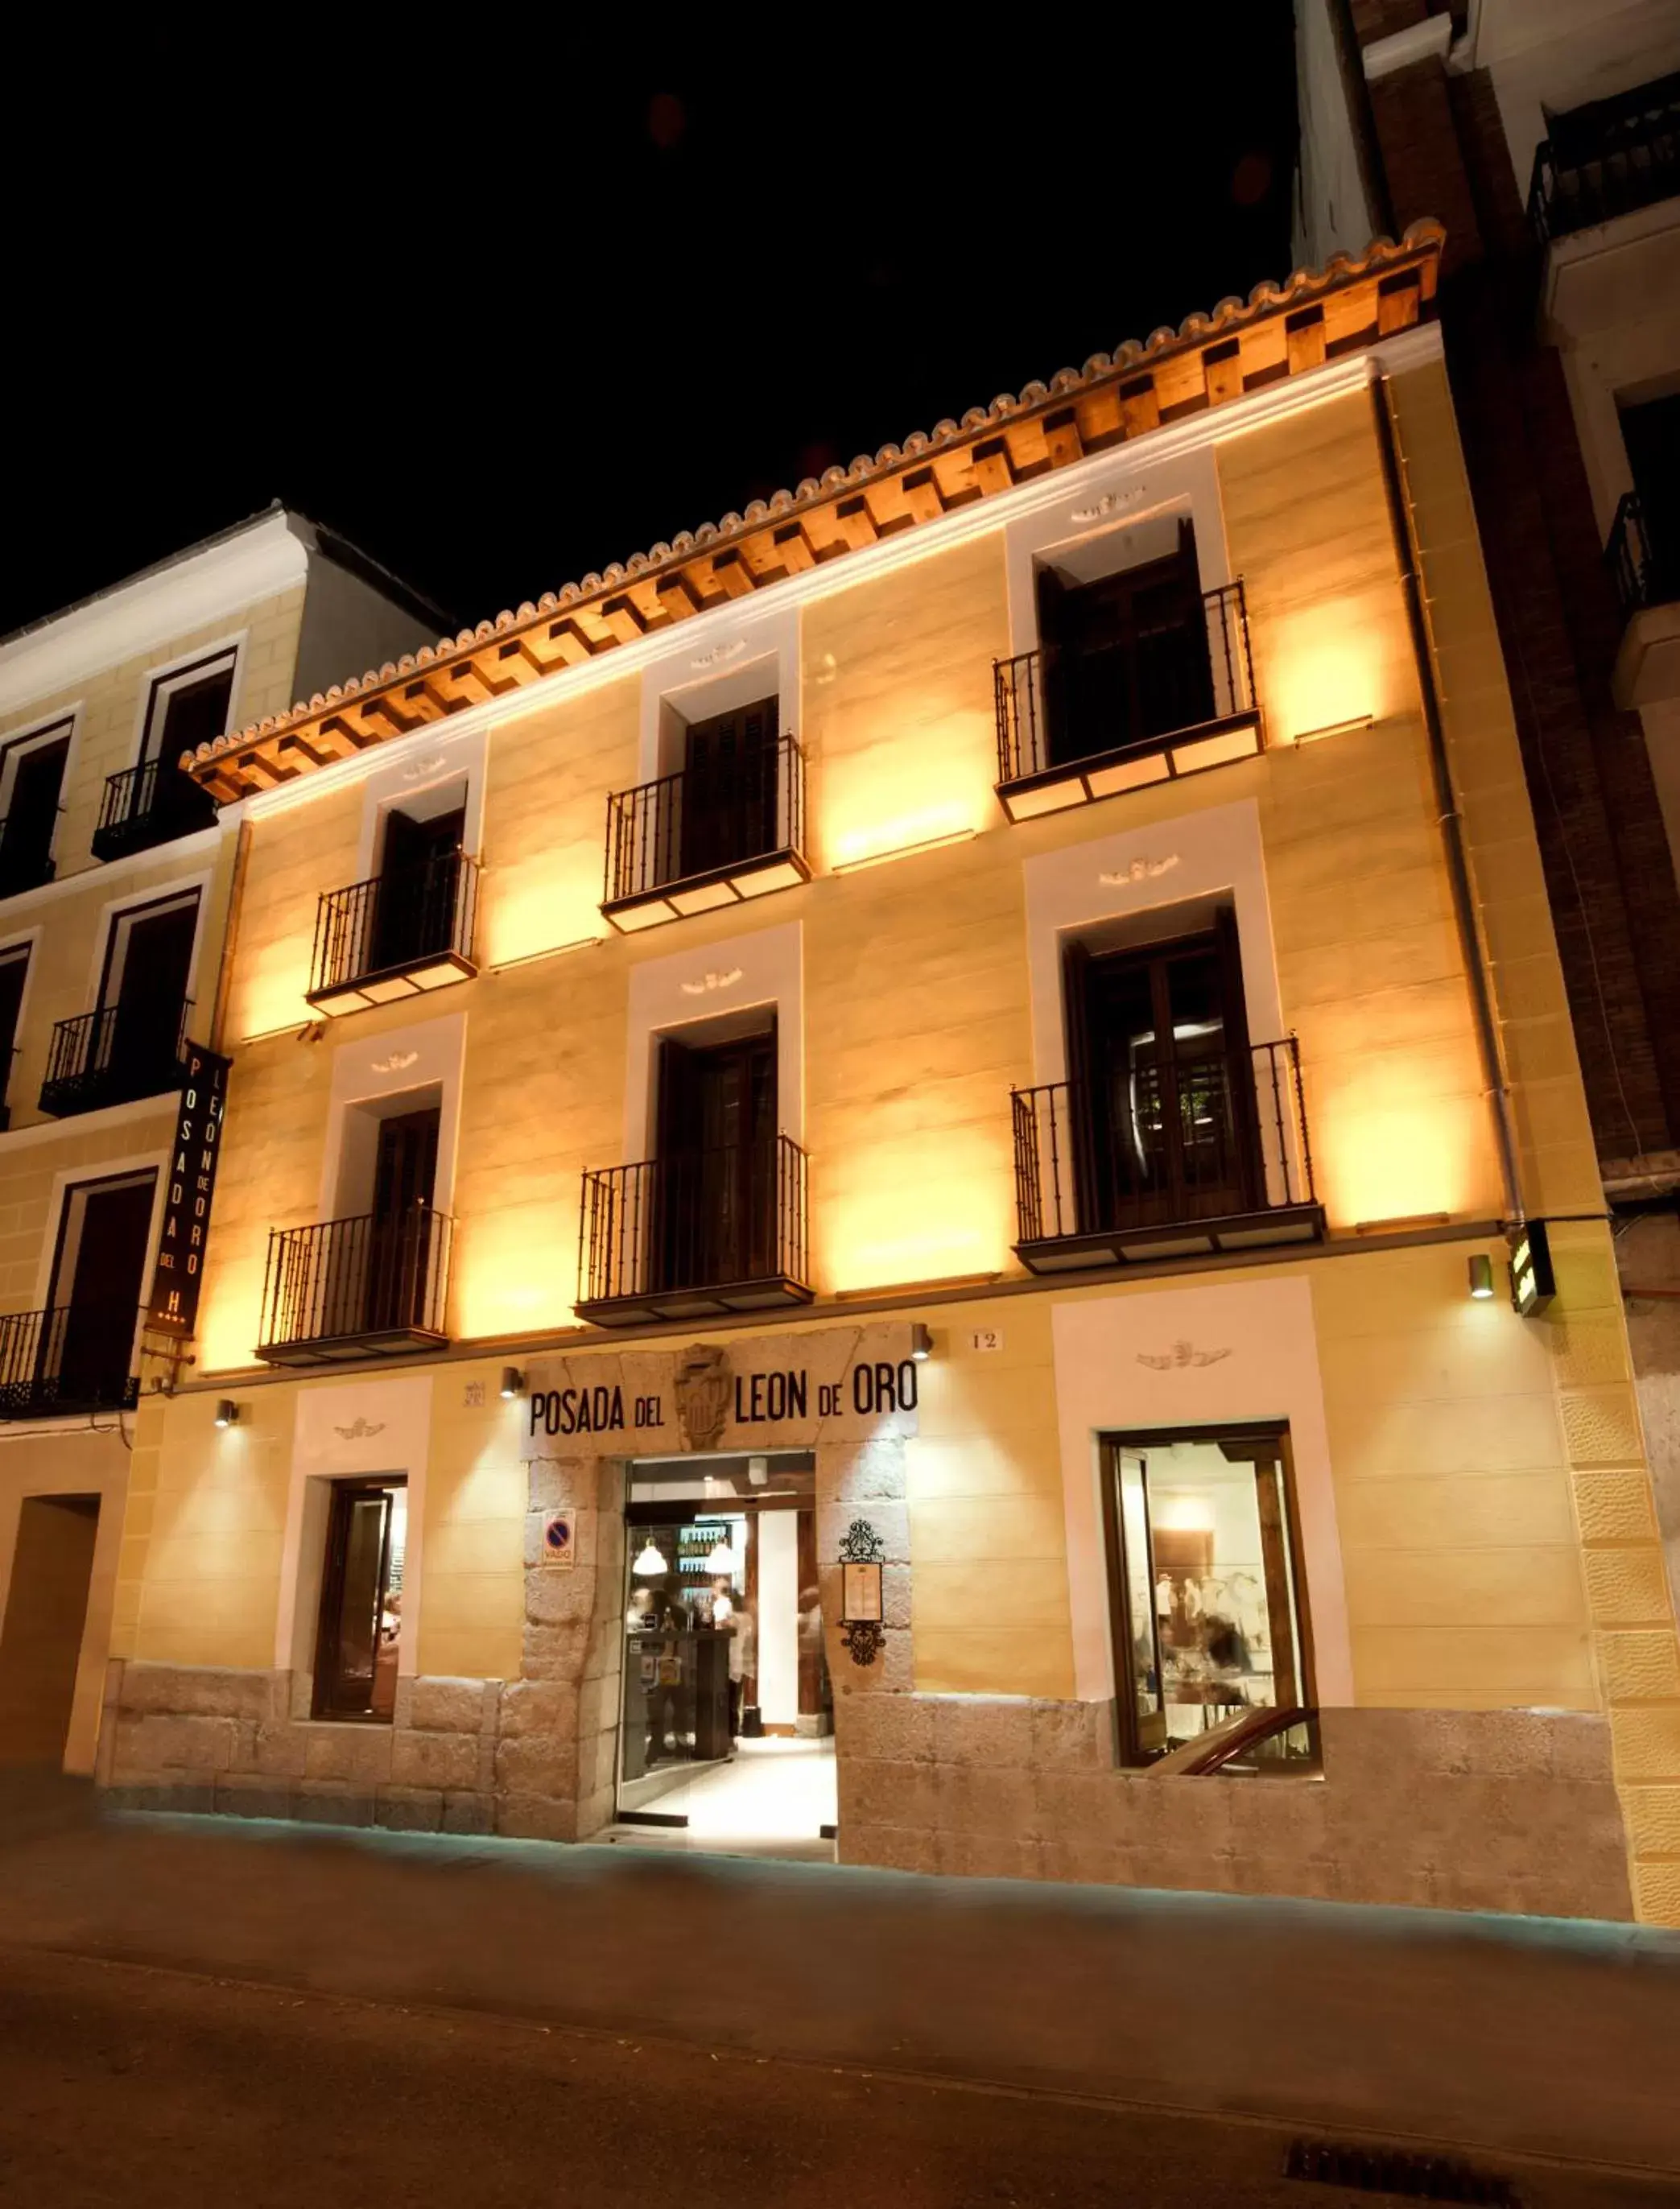 Facade/entrance in Posada del León de Oro Boutique Hotel